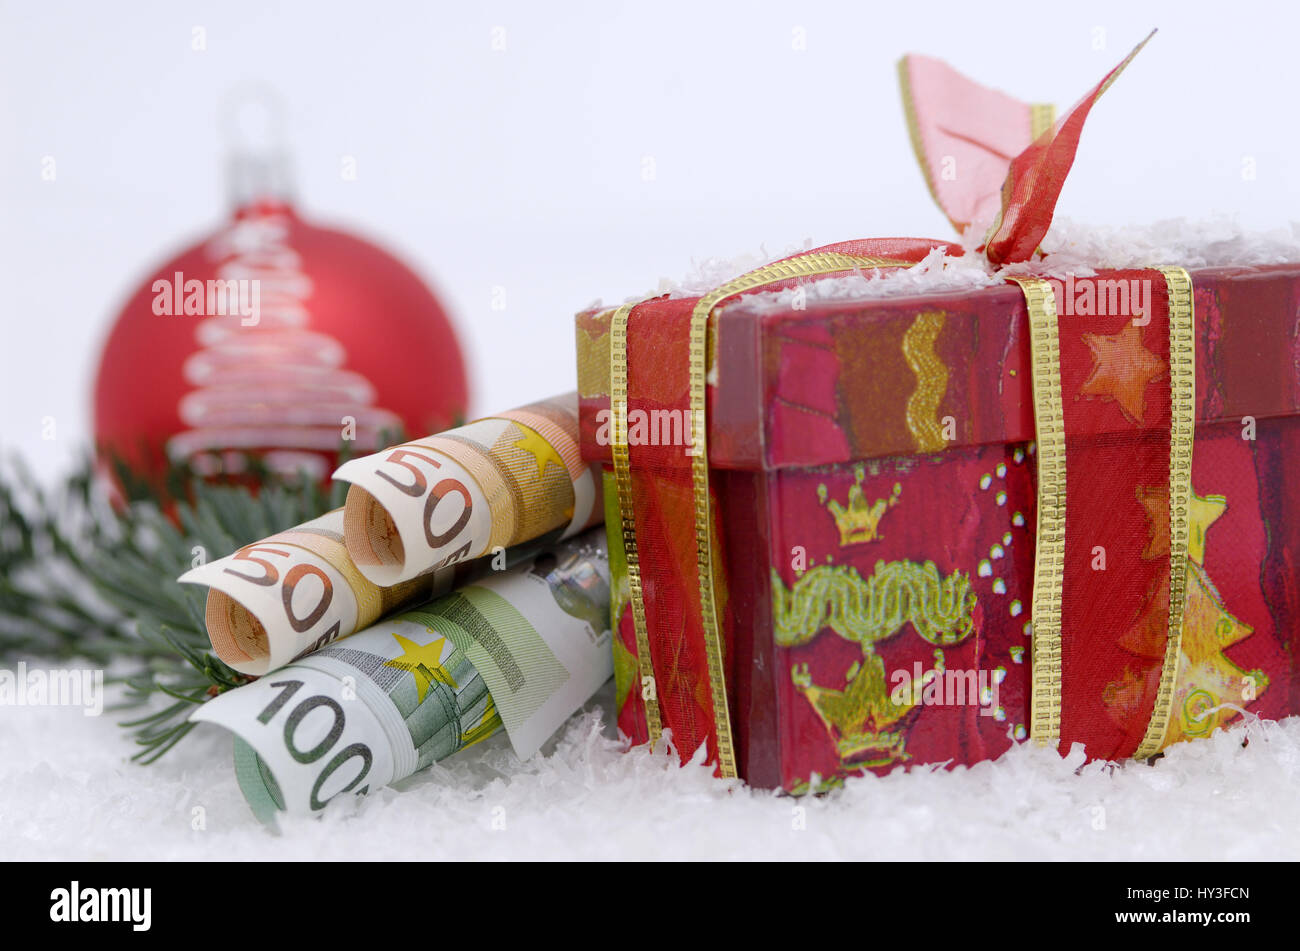 Allocation de Noël, salaire, salaire, Noël, Noël, l'Avent, , Weihnachtsgeld, Schaffhouse, Gehalt, Weihnachten, Weihnacht Banque D'Images